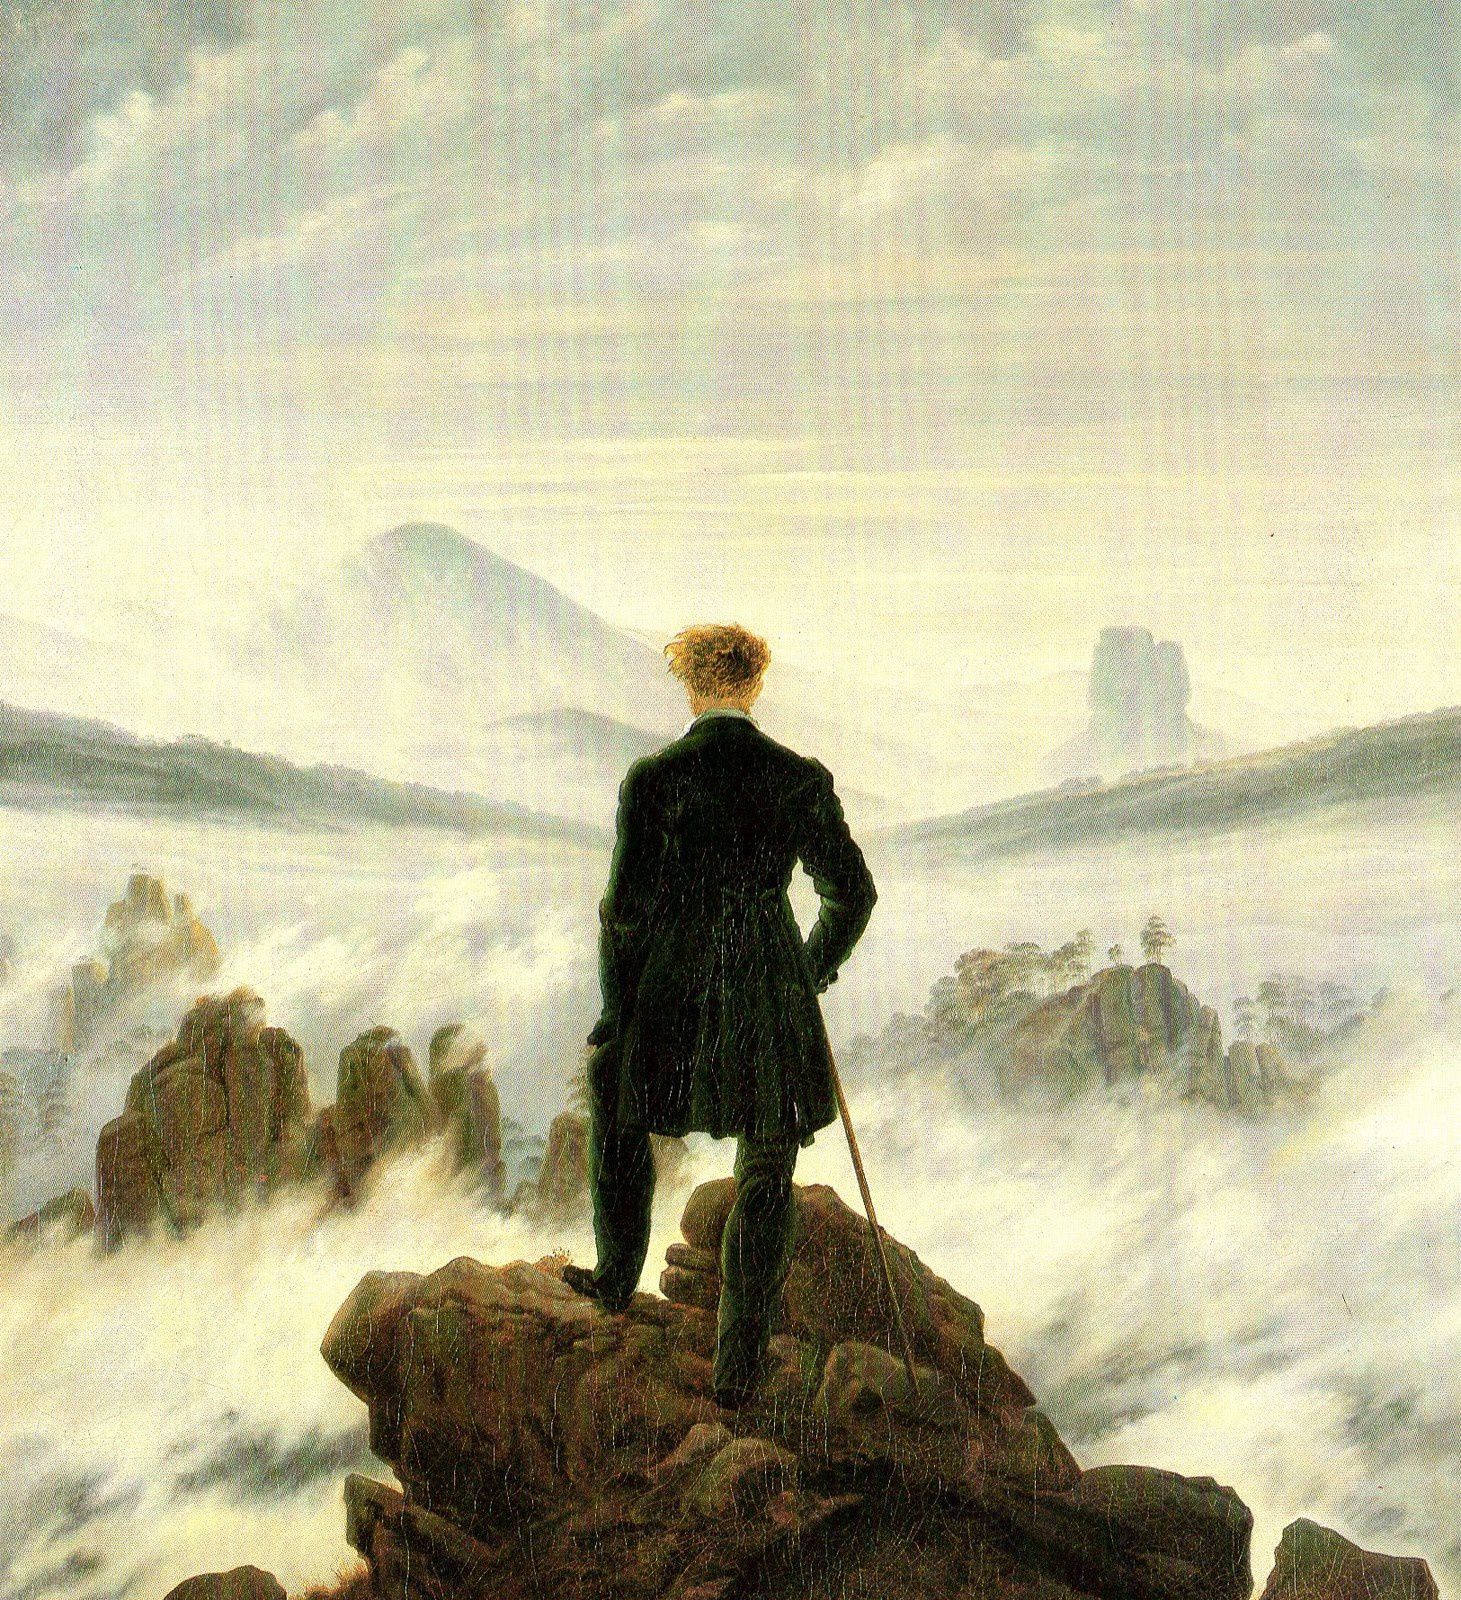 Le voyageur au-dessus de la mer de nuages (Der Wanderer über dem Nebelmeer) (1818). Détail d'une œuvre de C.D. Friedrich reproduite dans C.D. Friedrich, Le Tracé et la transparence, Centre Culturel du Marais, Paris, 1984. Fig. 59, p. 82. HST, 74,8 x 98,4 cm. Hambourg - Kunsthalle, inv. Nr. 5161.